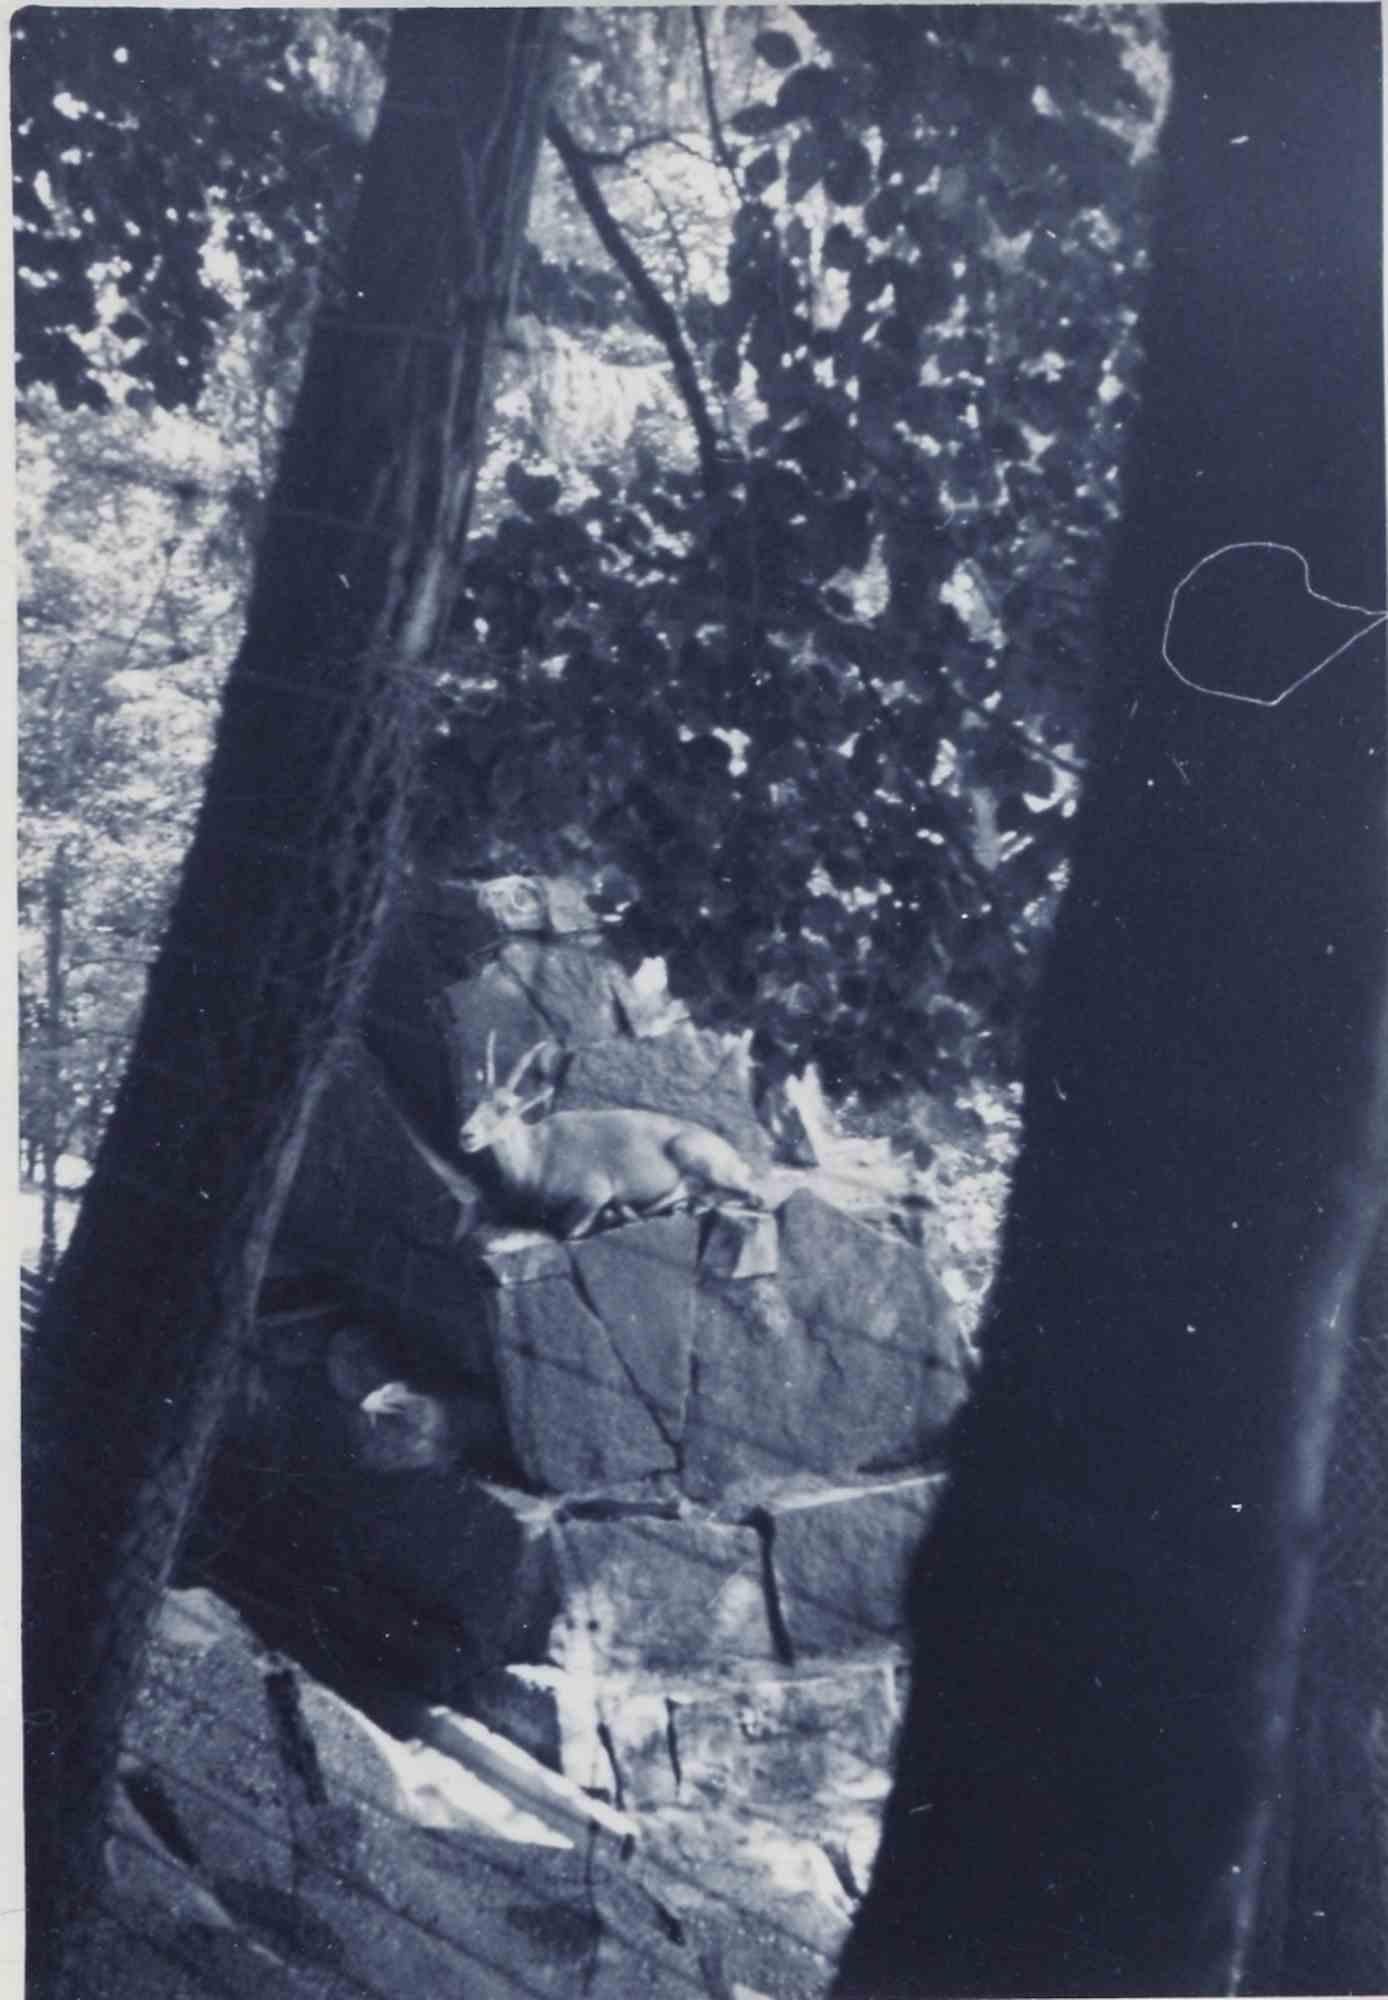 Unknown Landscape Photograph – Old days Foto – Bäume und Ibex – Vintage-Foto – Mitte des 20. Jahrhunderts